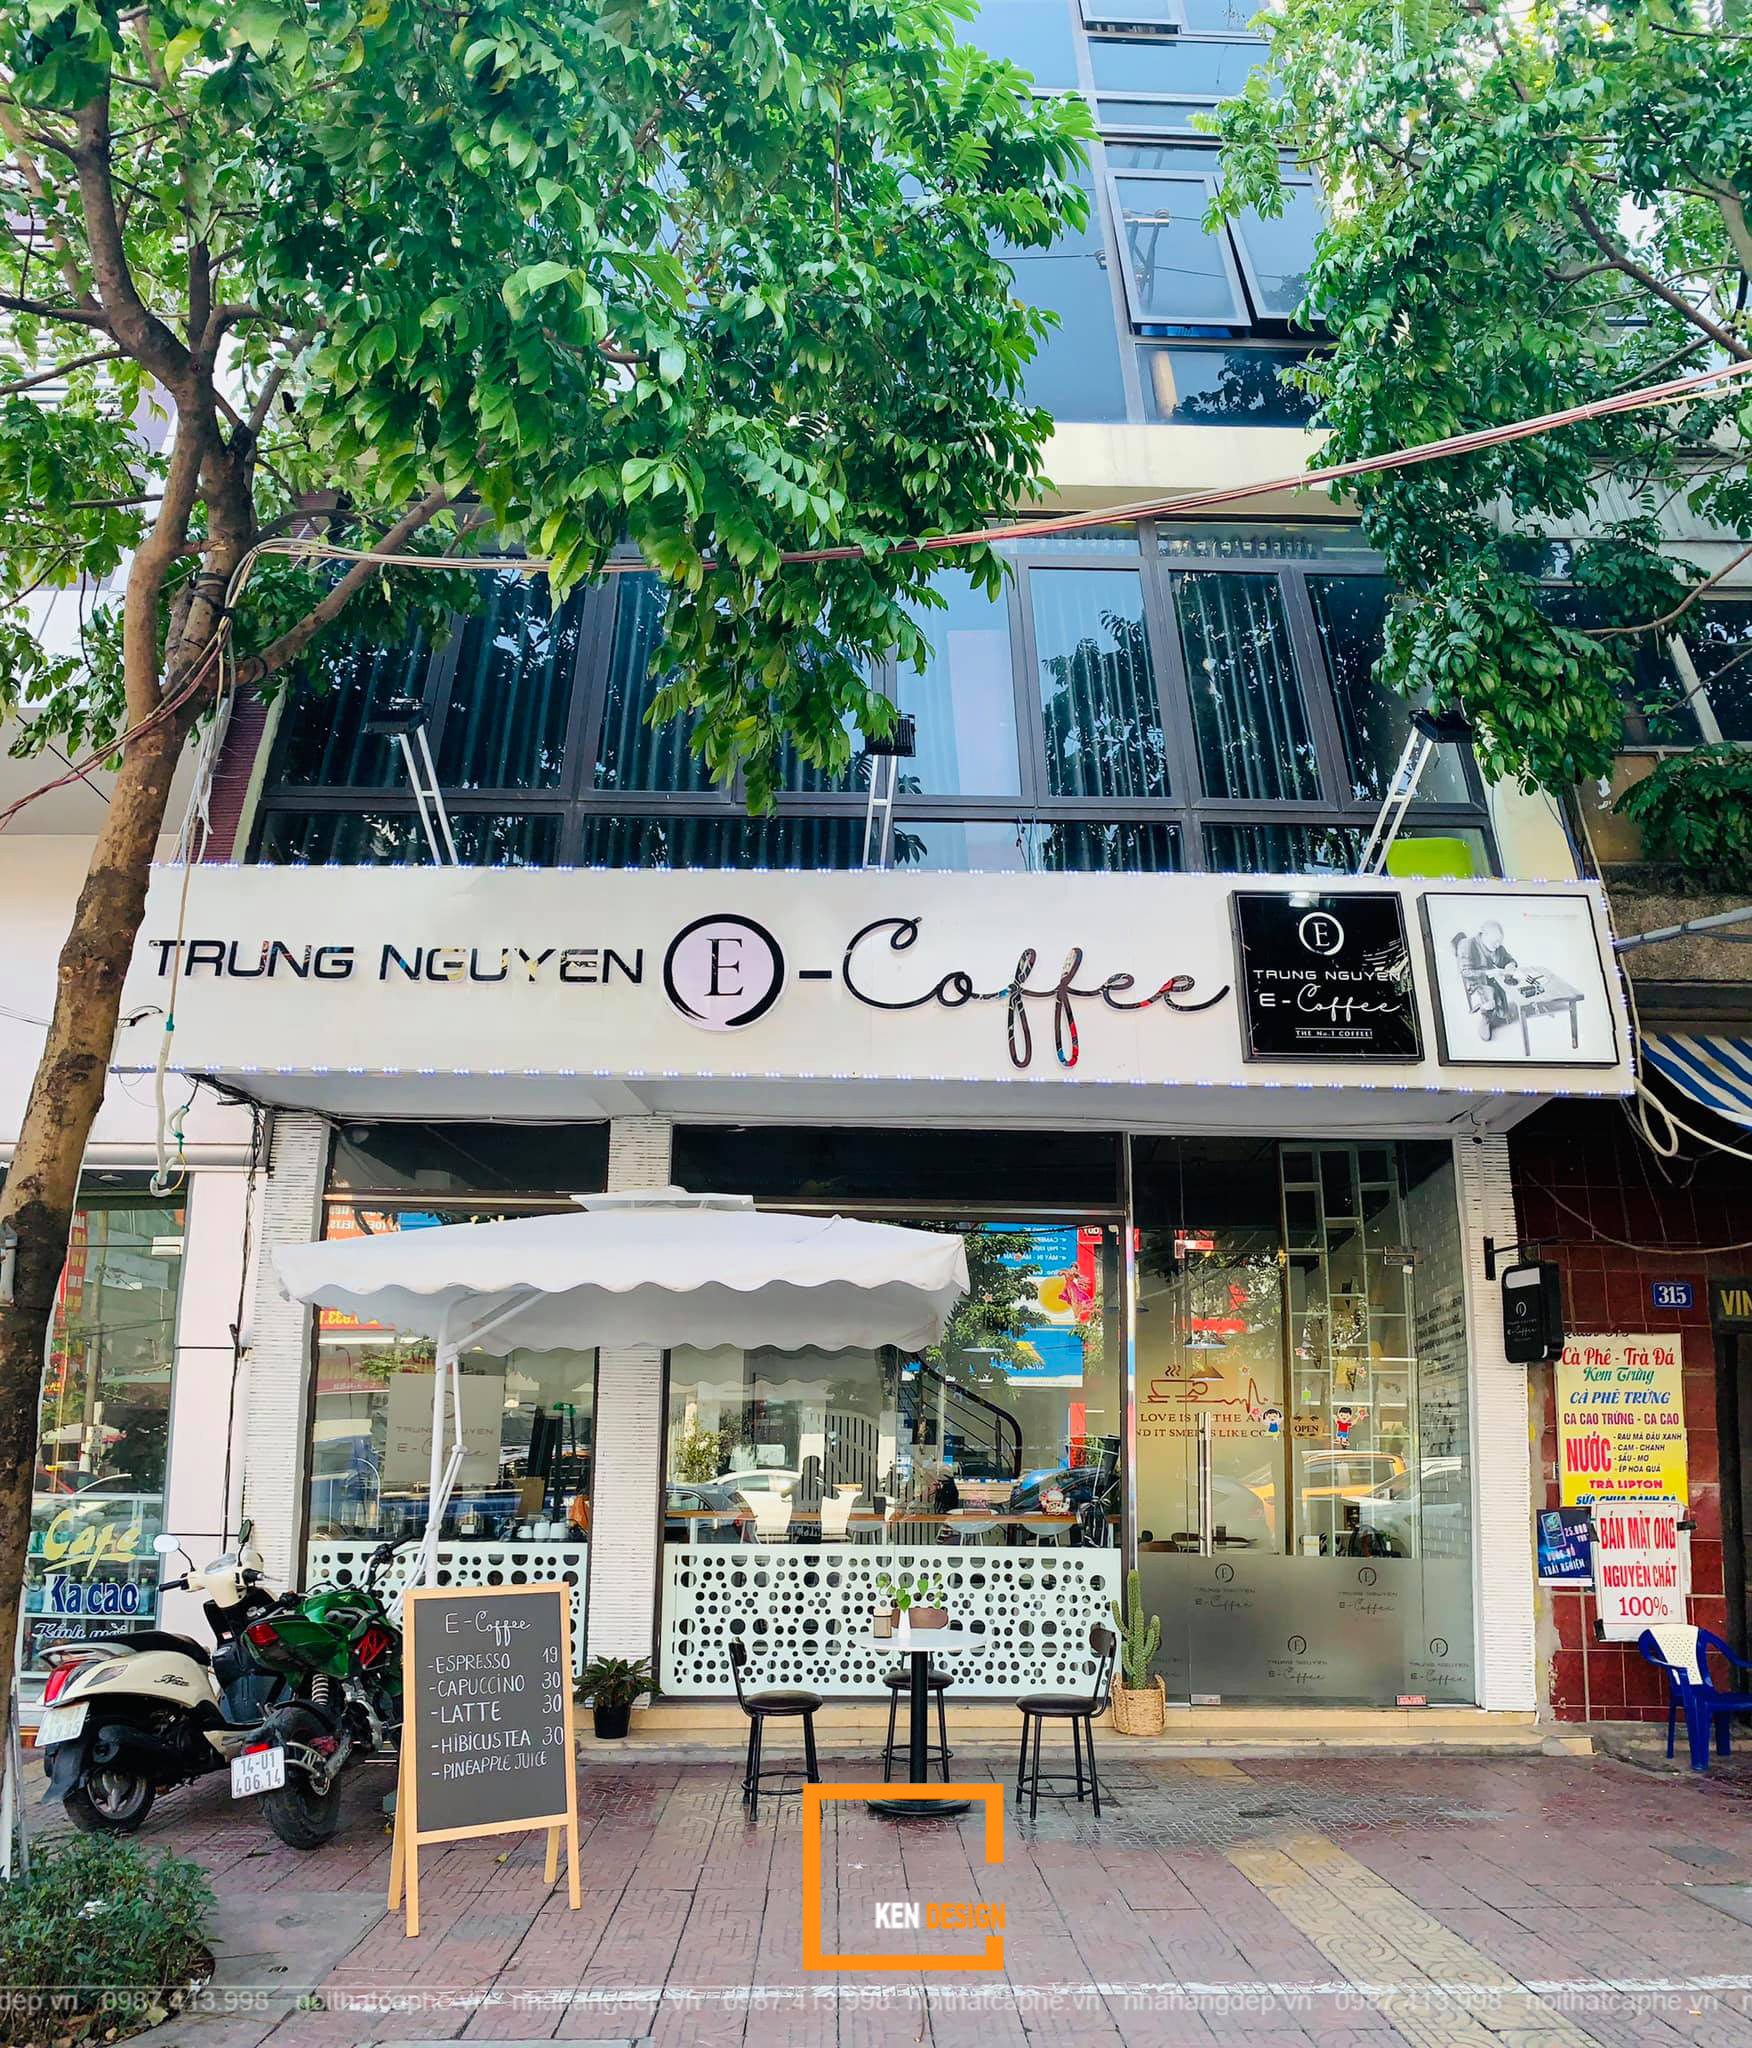 Cafe E Coffee Trung Nguyen 93 Kendesign Chuyên Thiết Kế Thi Công Nội Thất Nhà Hàng Khách Sạn